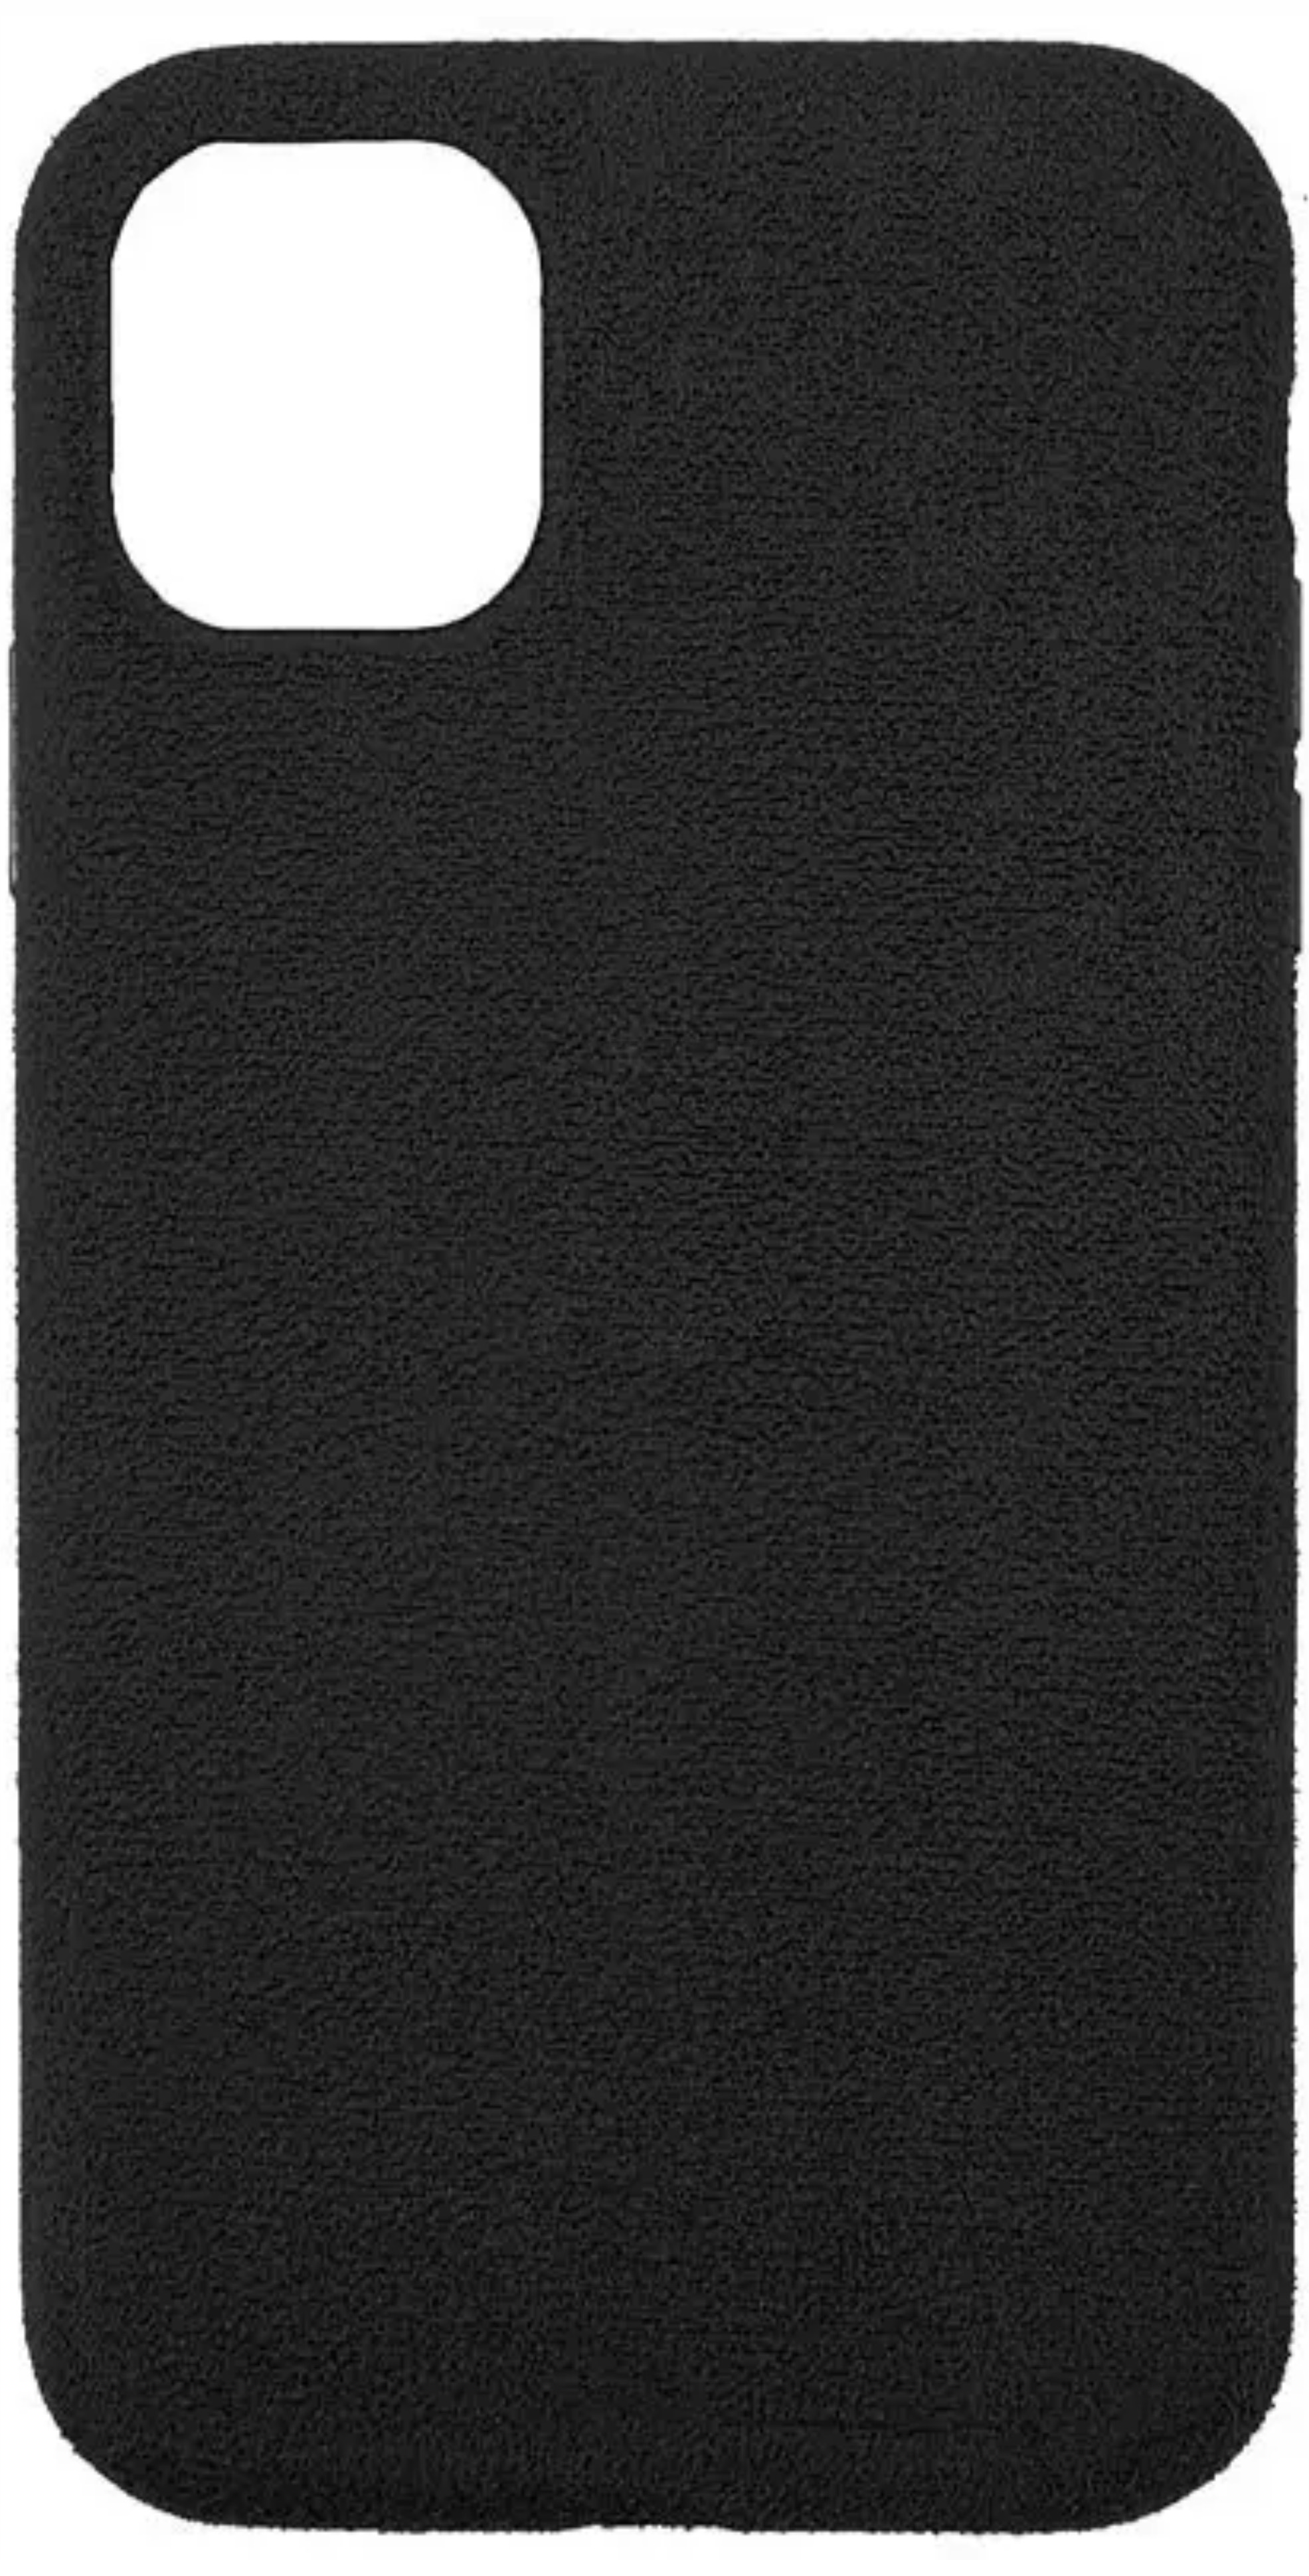 Чехол Orig Alcantara Case для Apple iPhone 11 Pro Max, черный